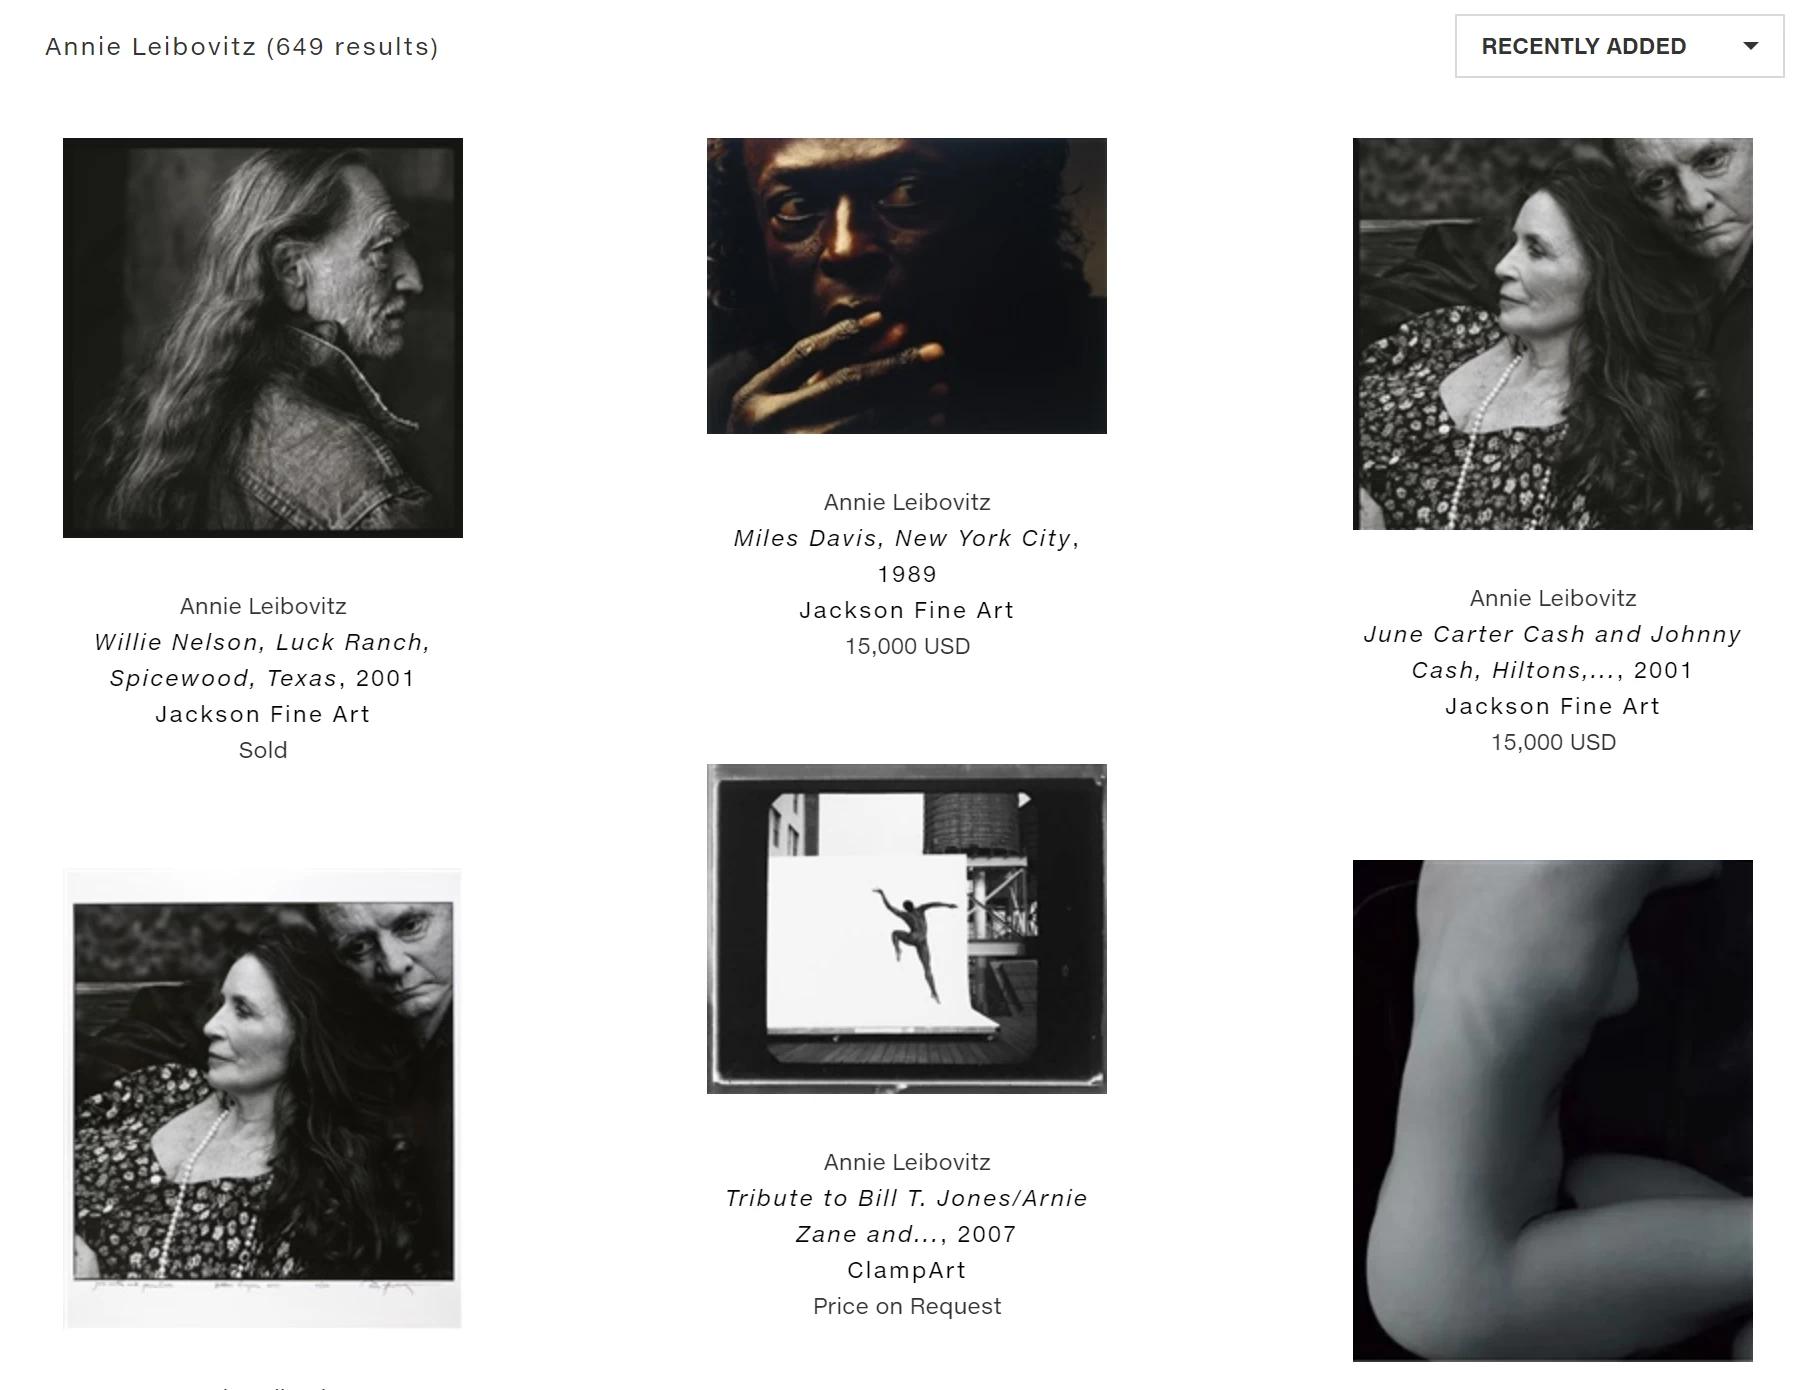 Annie Leibovitz' website